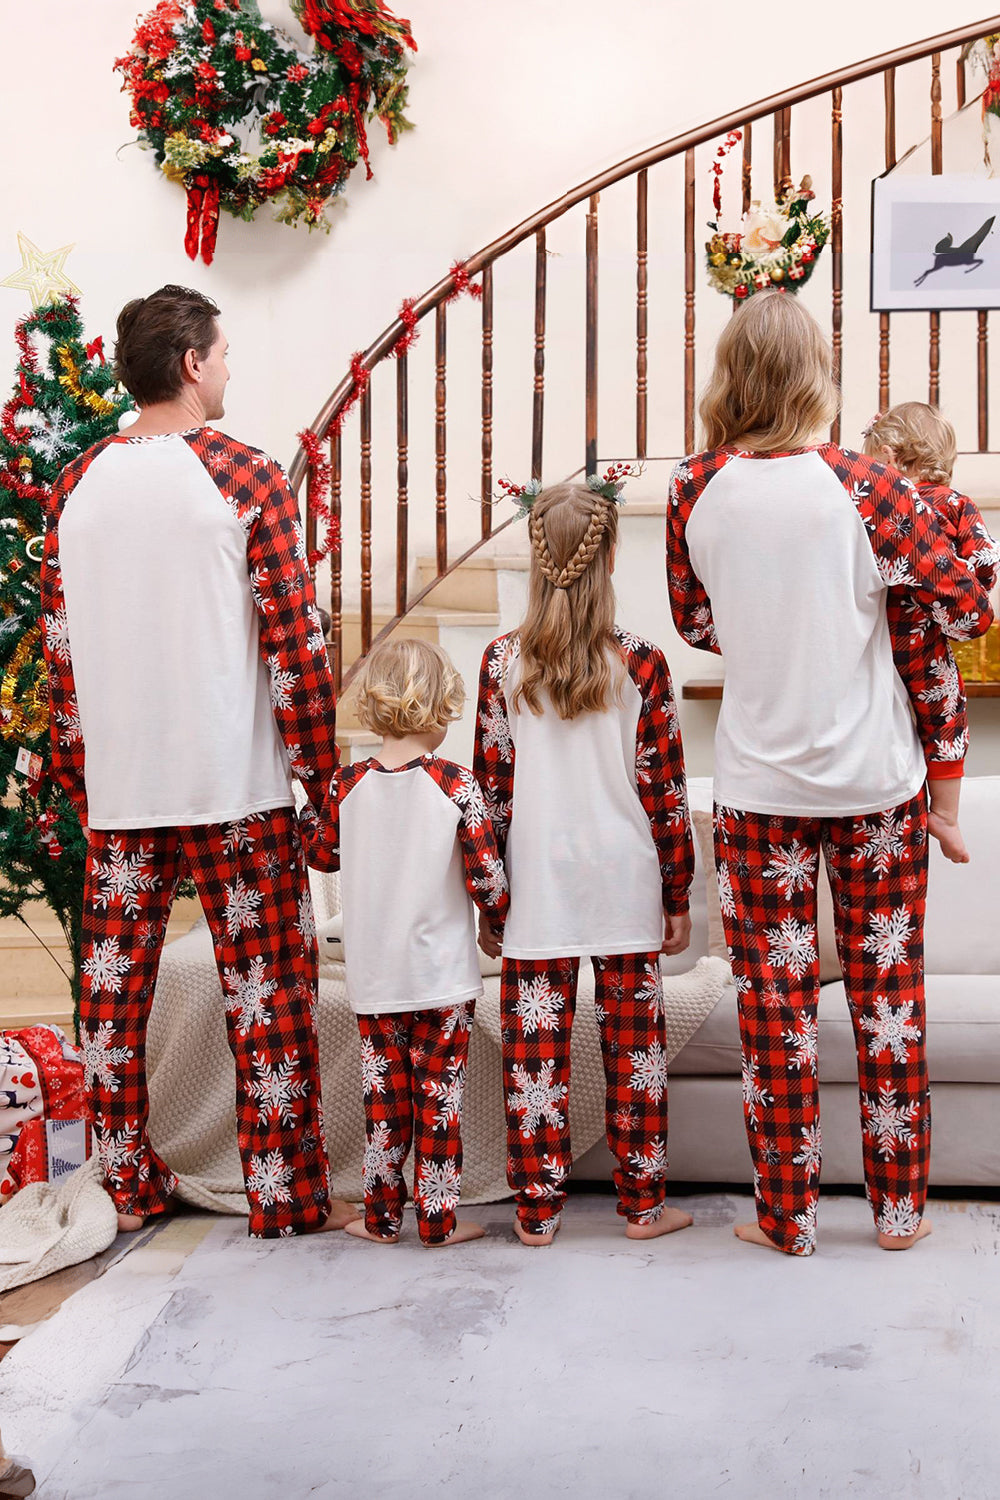 Pijama navideño familiar a juego a cuadros con copo de nieve